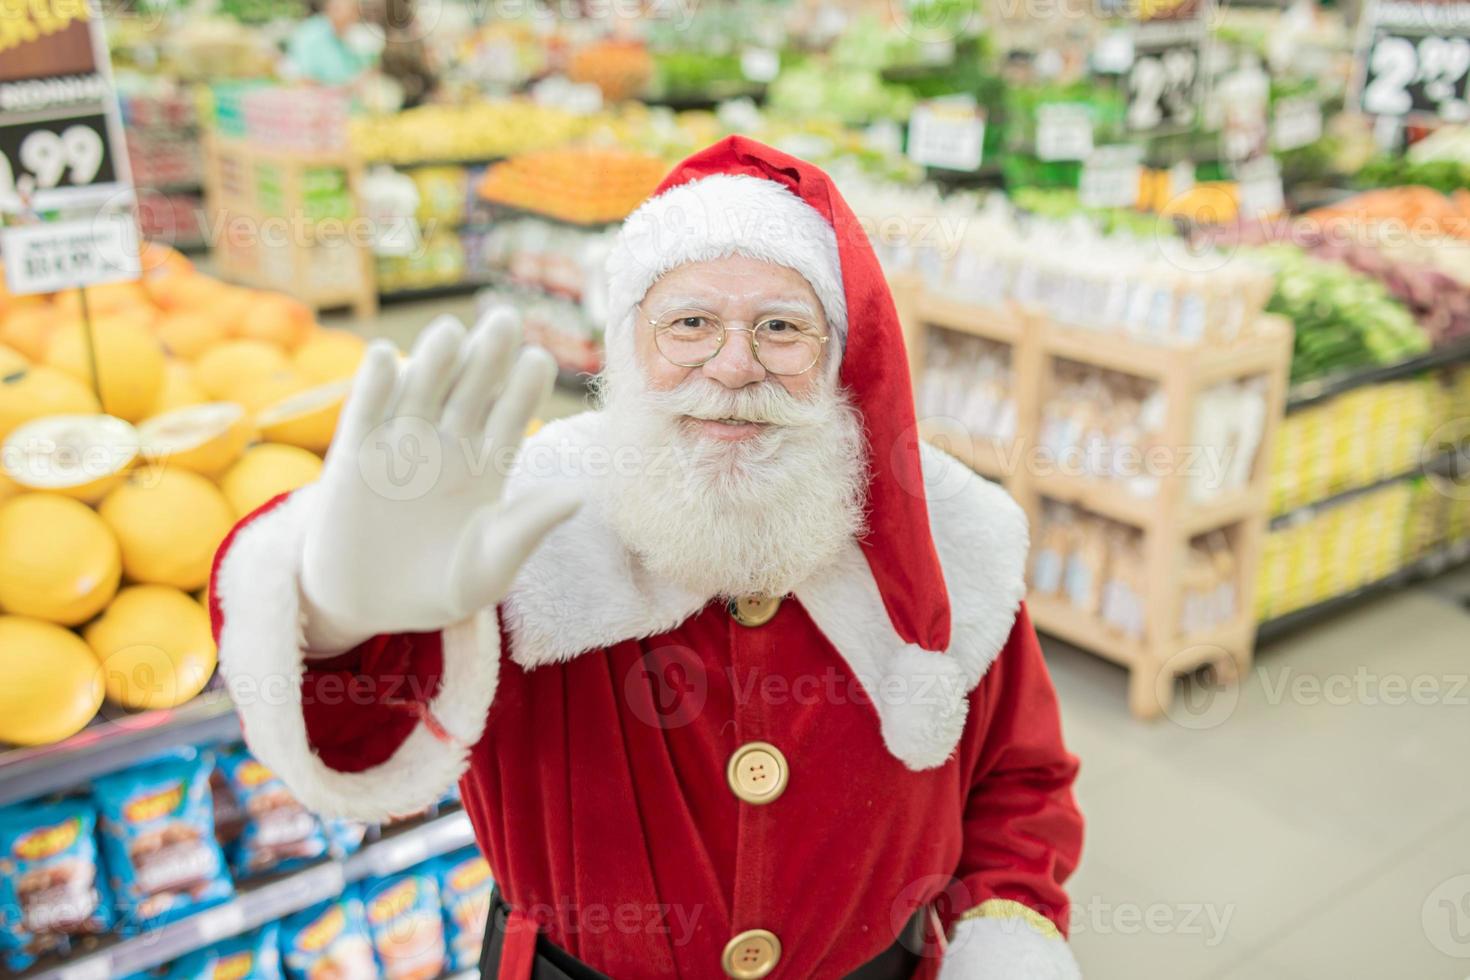 de kerstman doet boodschappen in de supermarkt, hij duwt een volle kar, kerstmis en winkelconcept. foto